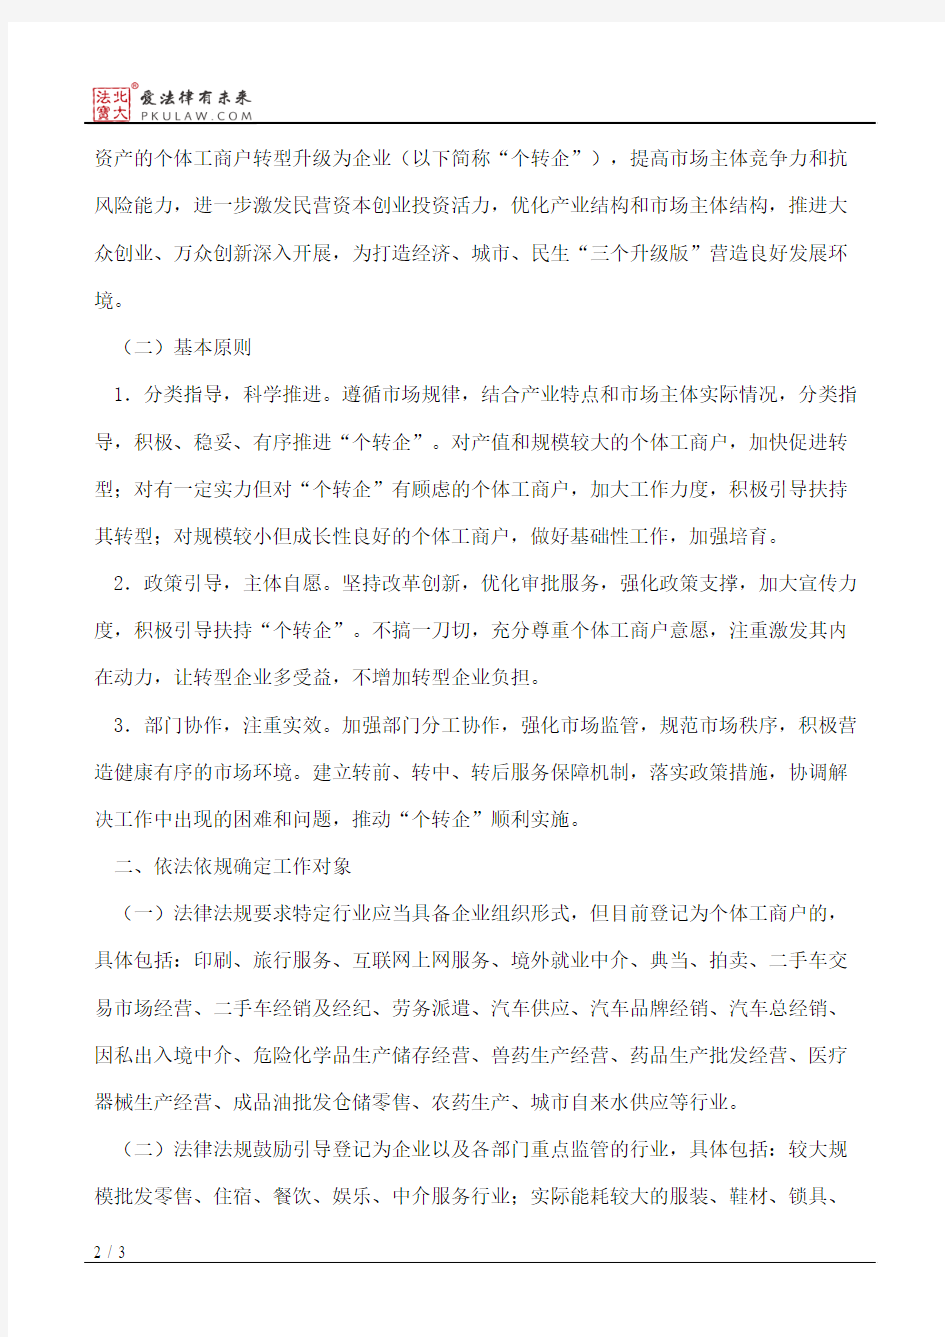 武汉市人民政府关于促进个体工商户转型升级为企业的意见